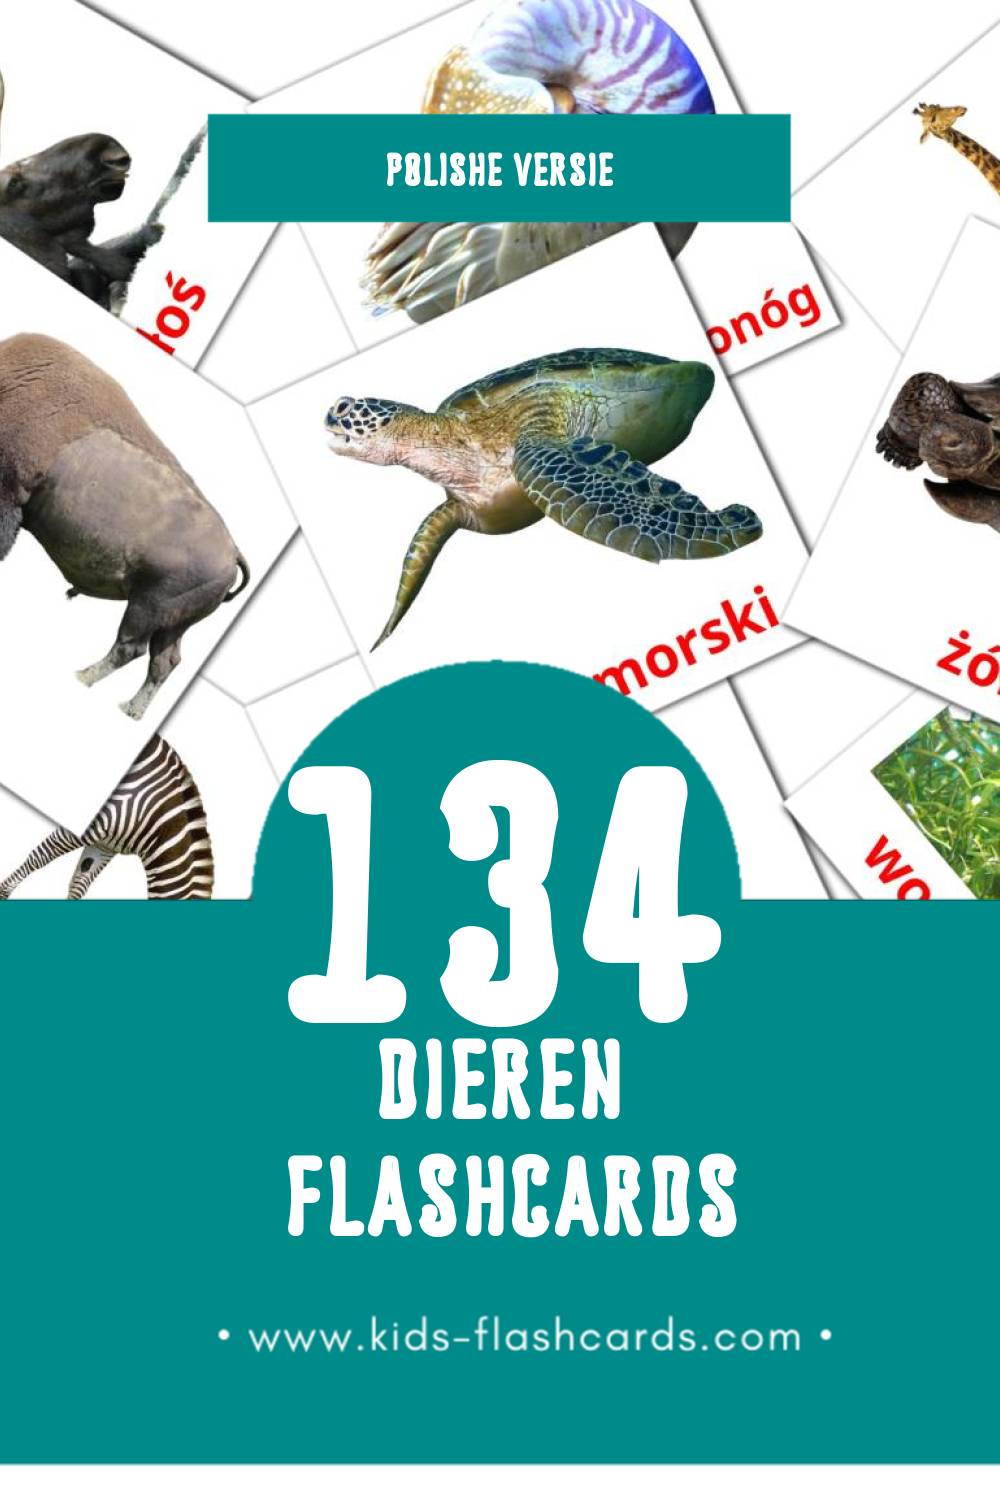 Visuele zwierzęta Flashcards voor Kleuters (134 kaarten in het Polish)